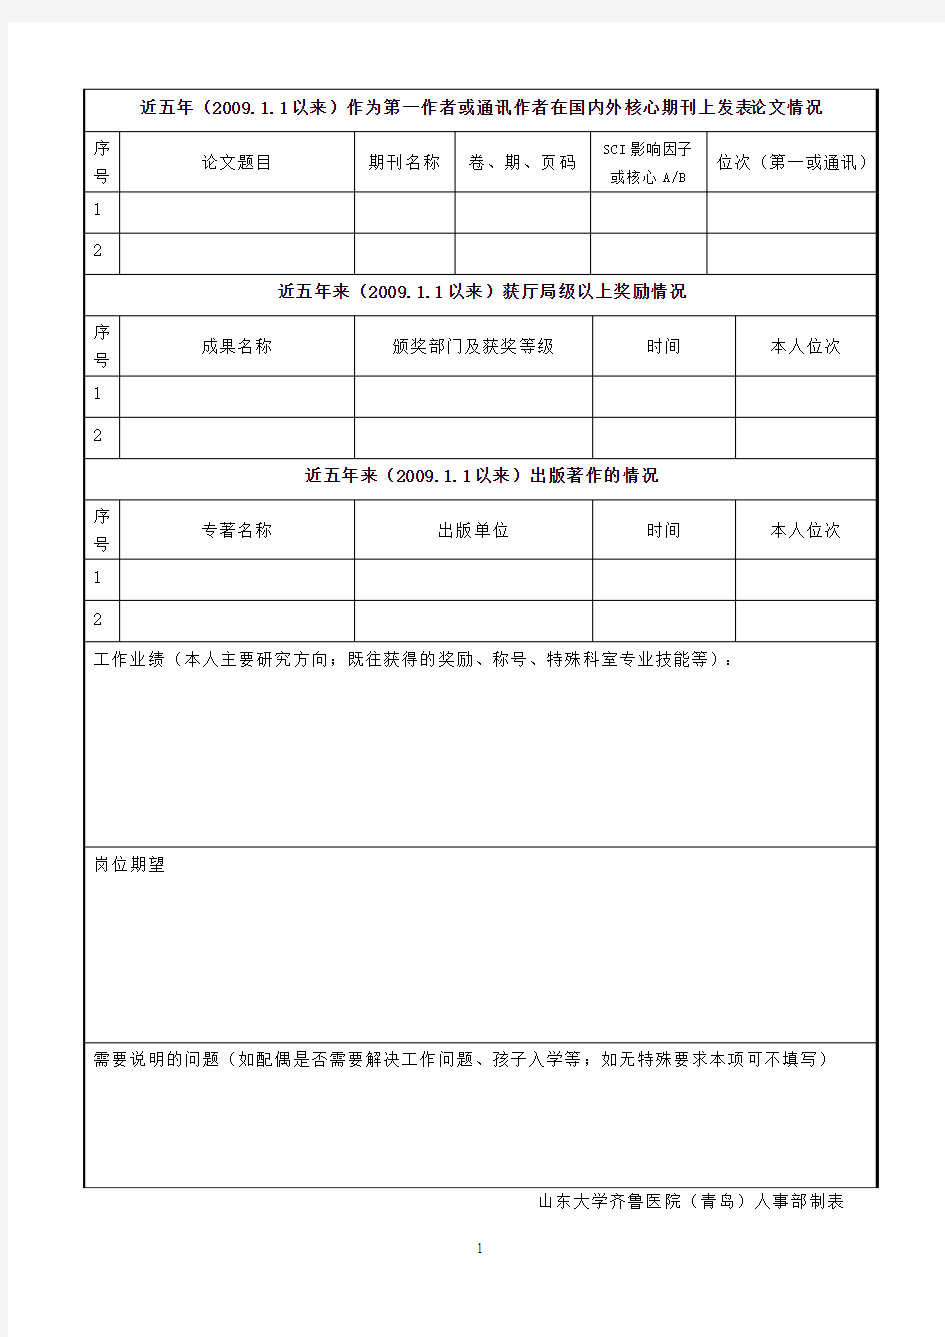 山东大学齐鲁医院(青岛)2015事业编制人员招聘申请表